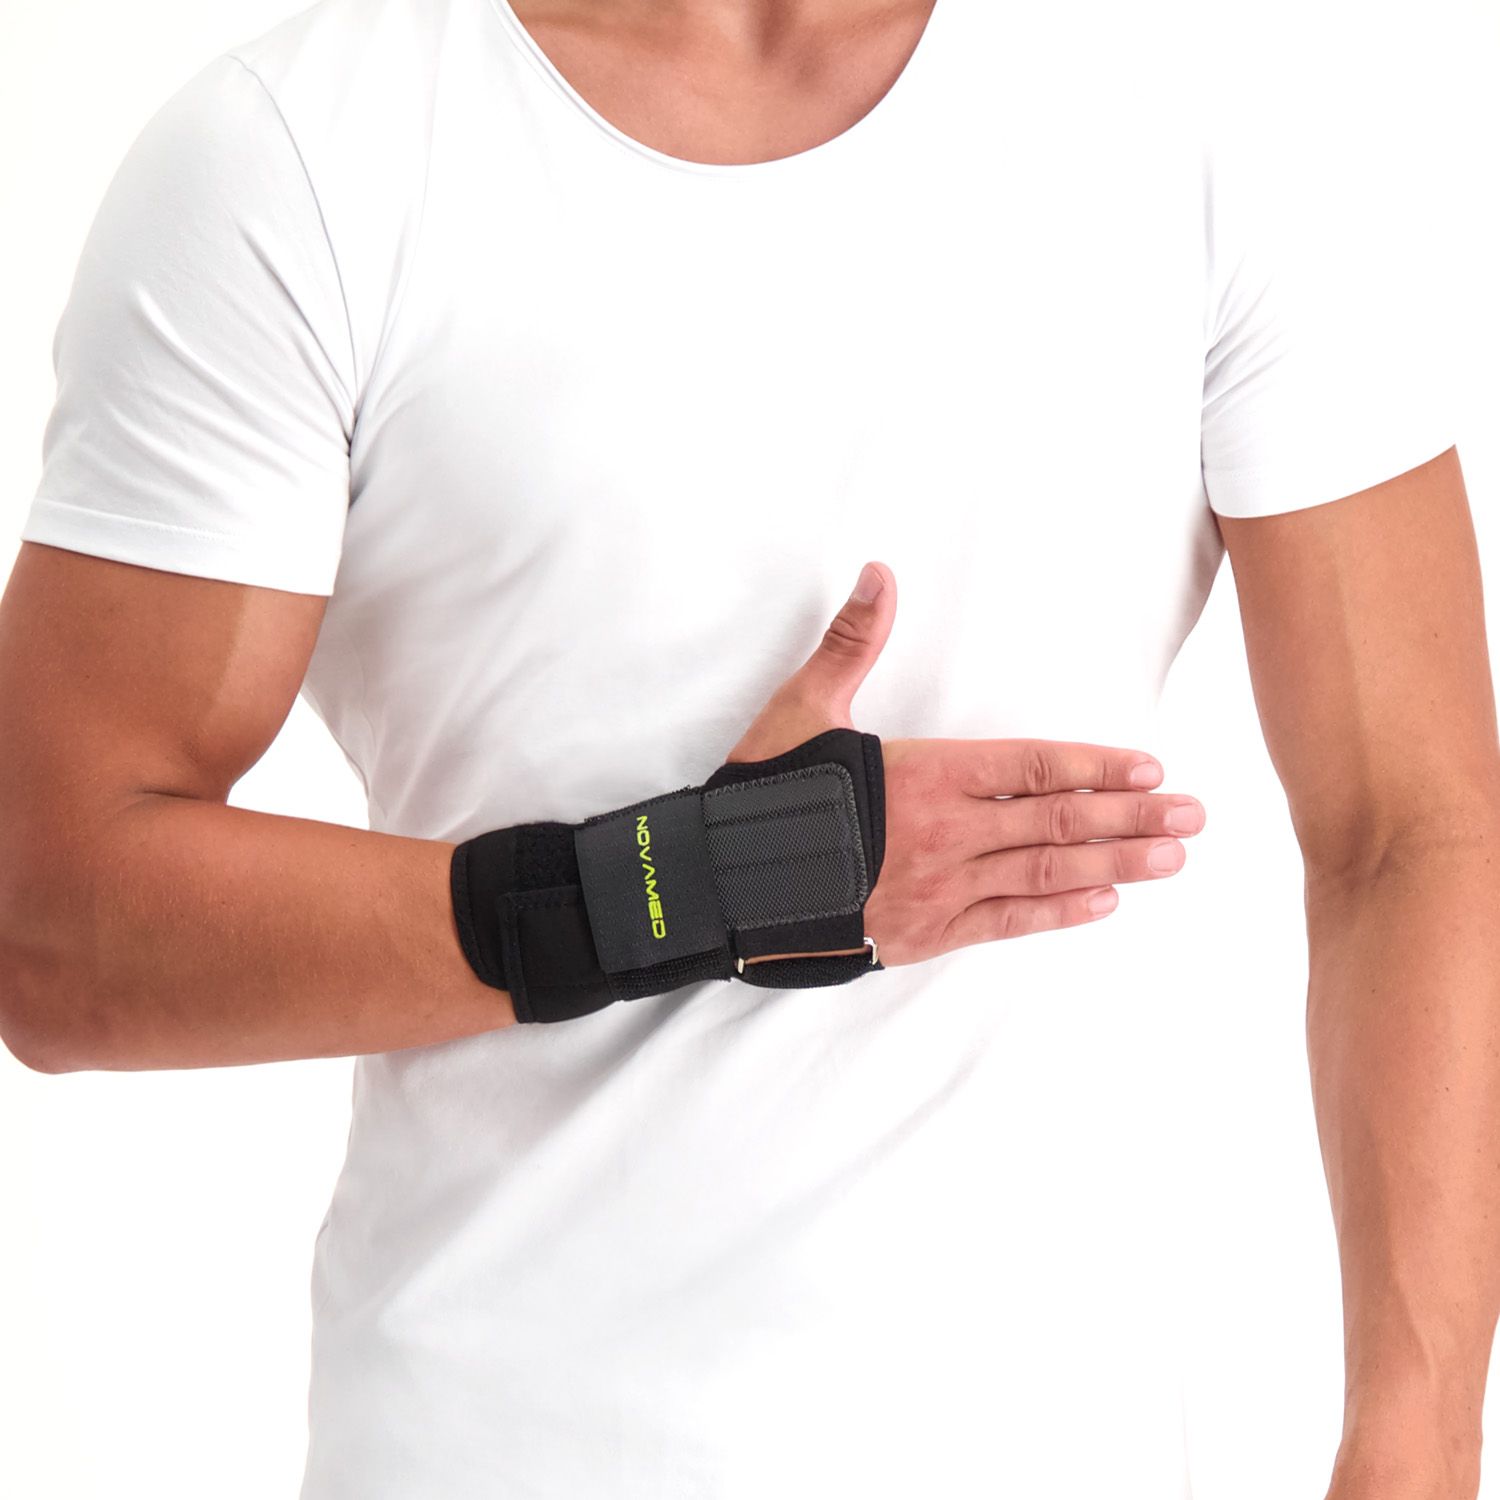 novamed lightweight wrist support black model